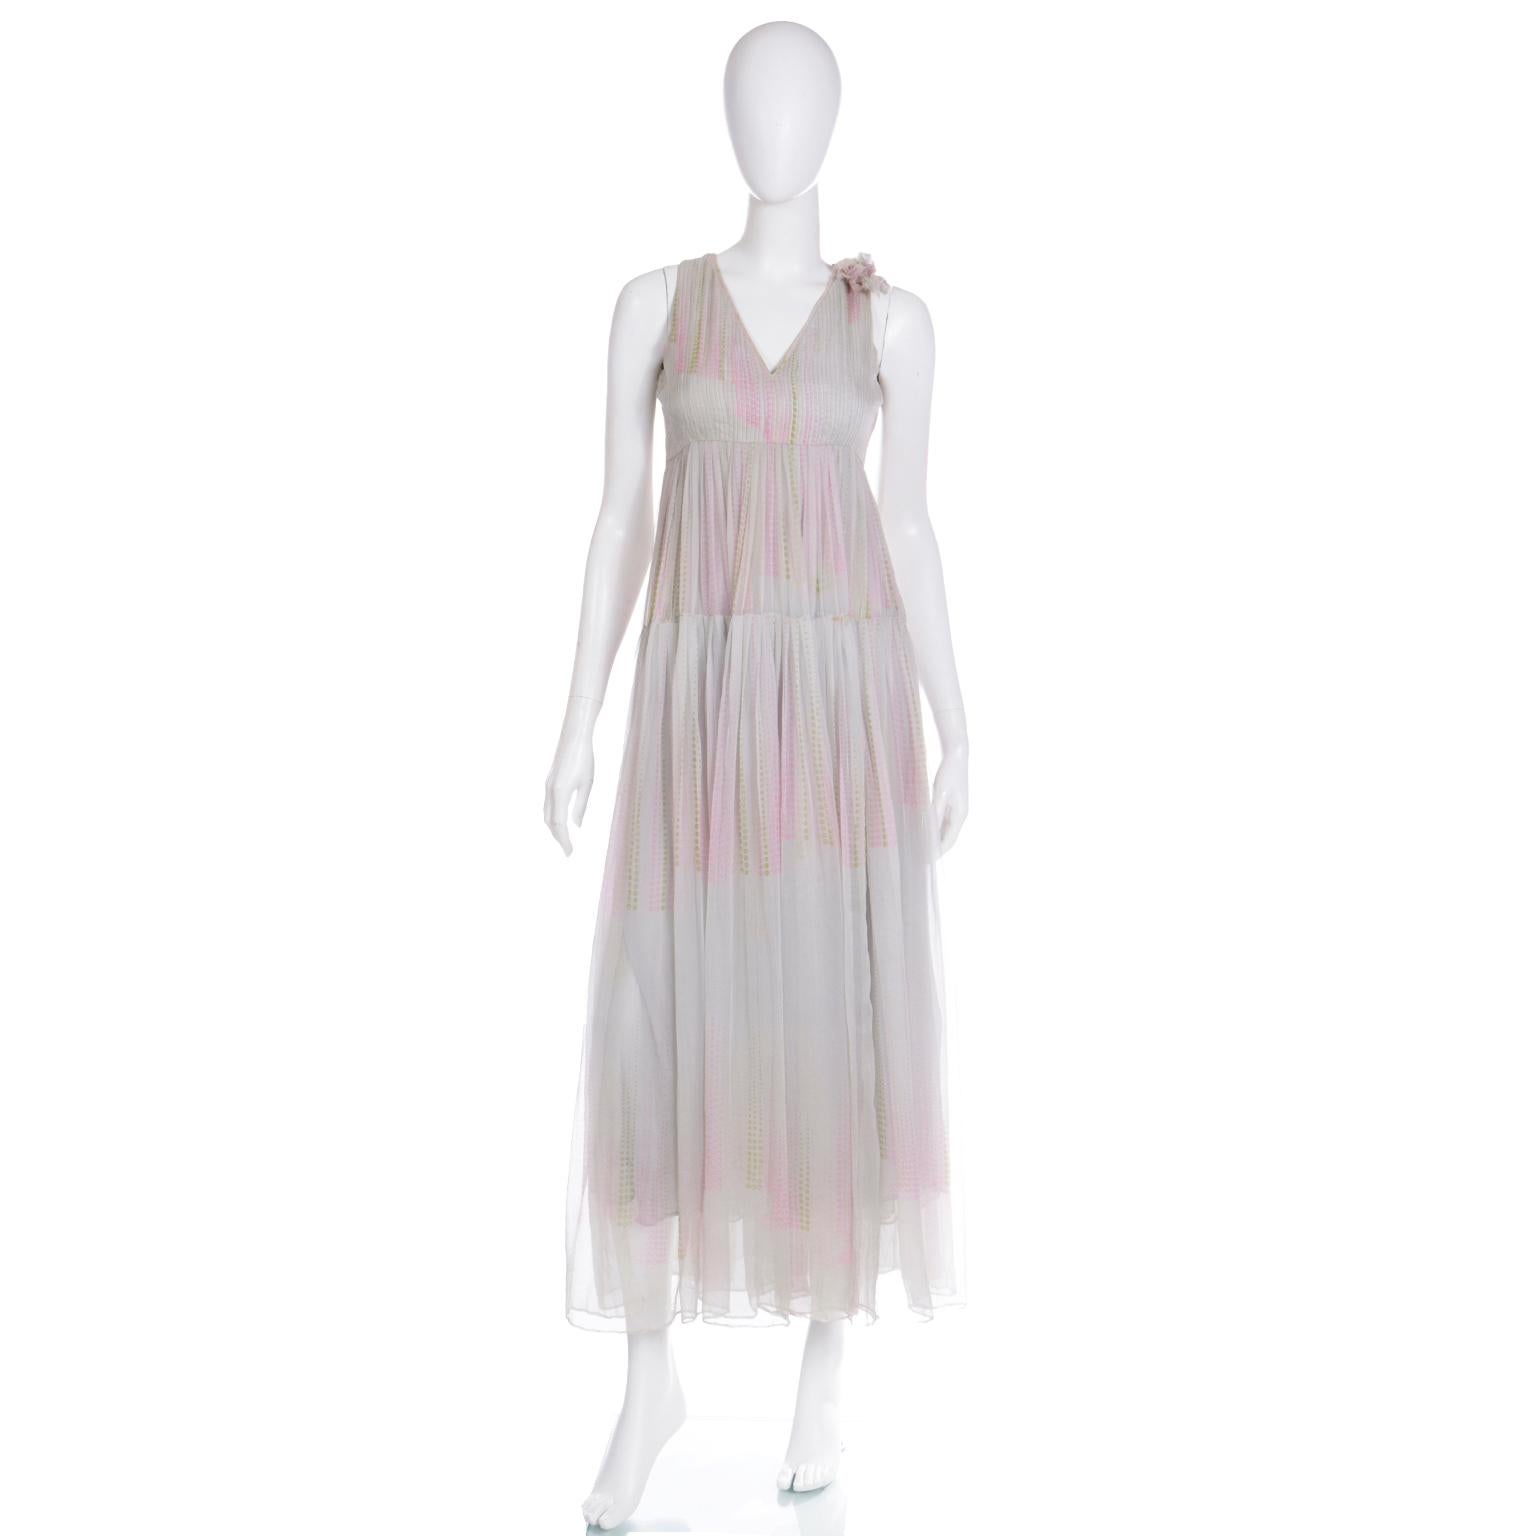 Dieses unglaubliche Vintage-Kleid aus Seidenchiffon von André Laug aus den frühen 1970er Jahren besteht aus einem plissierten, mehrlagigen, gestuften, blassgrauen Seidenchiffon mit abstrakten rosa und grünen Punkten. Das Mieder hat eine Empire-Büste